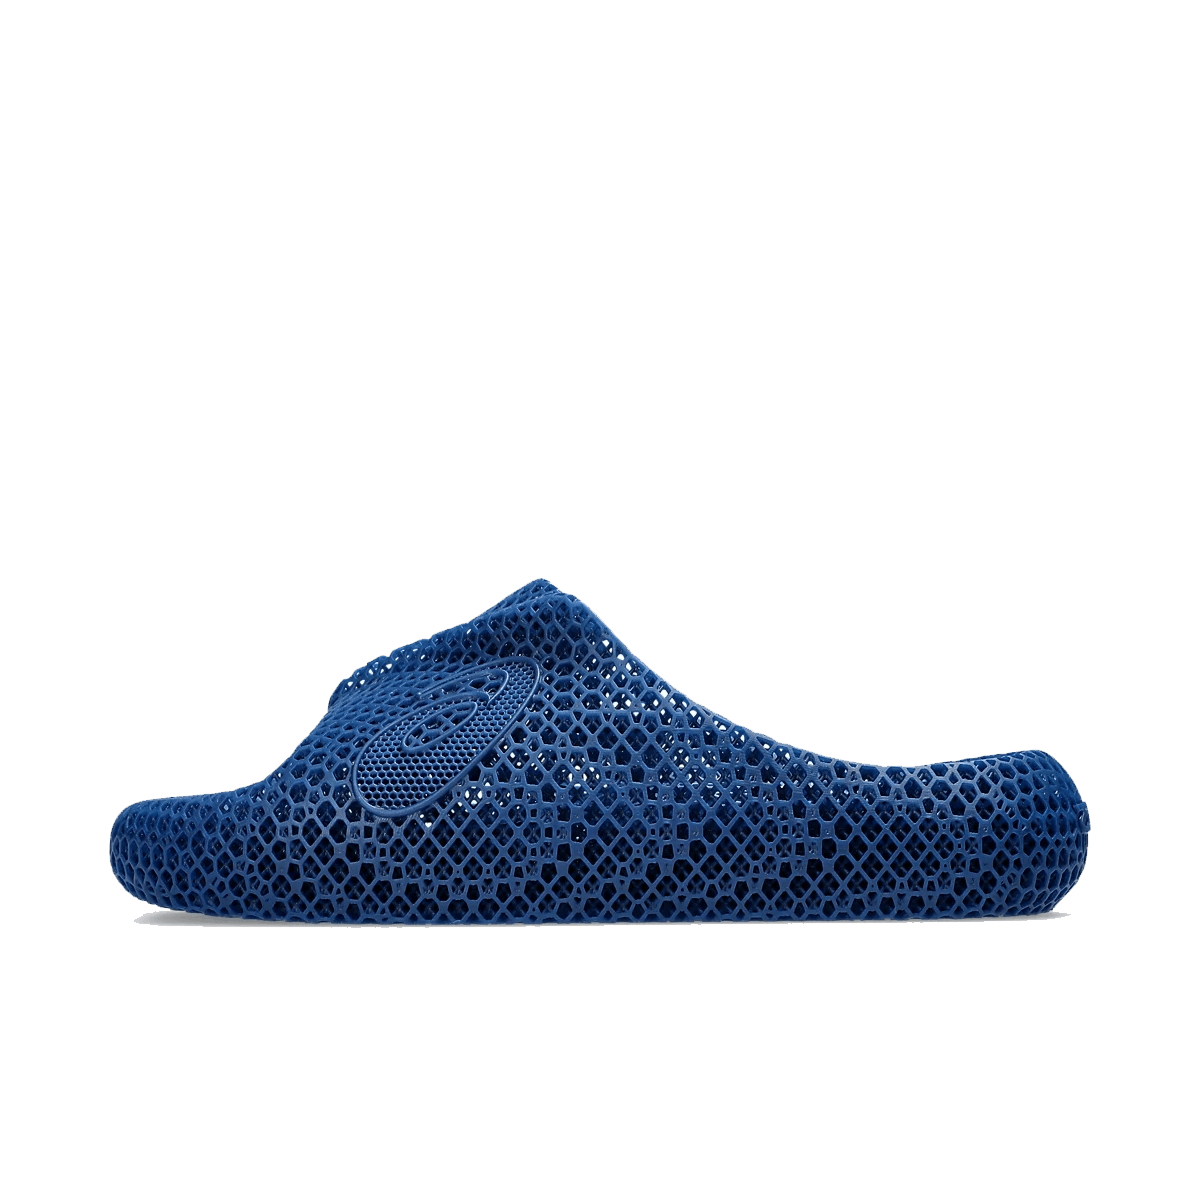 ASICS ACTIBREEZE 3D Sandal 'Mako Blue' 1013A130-400